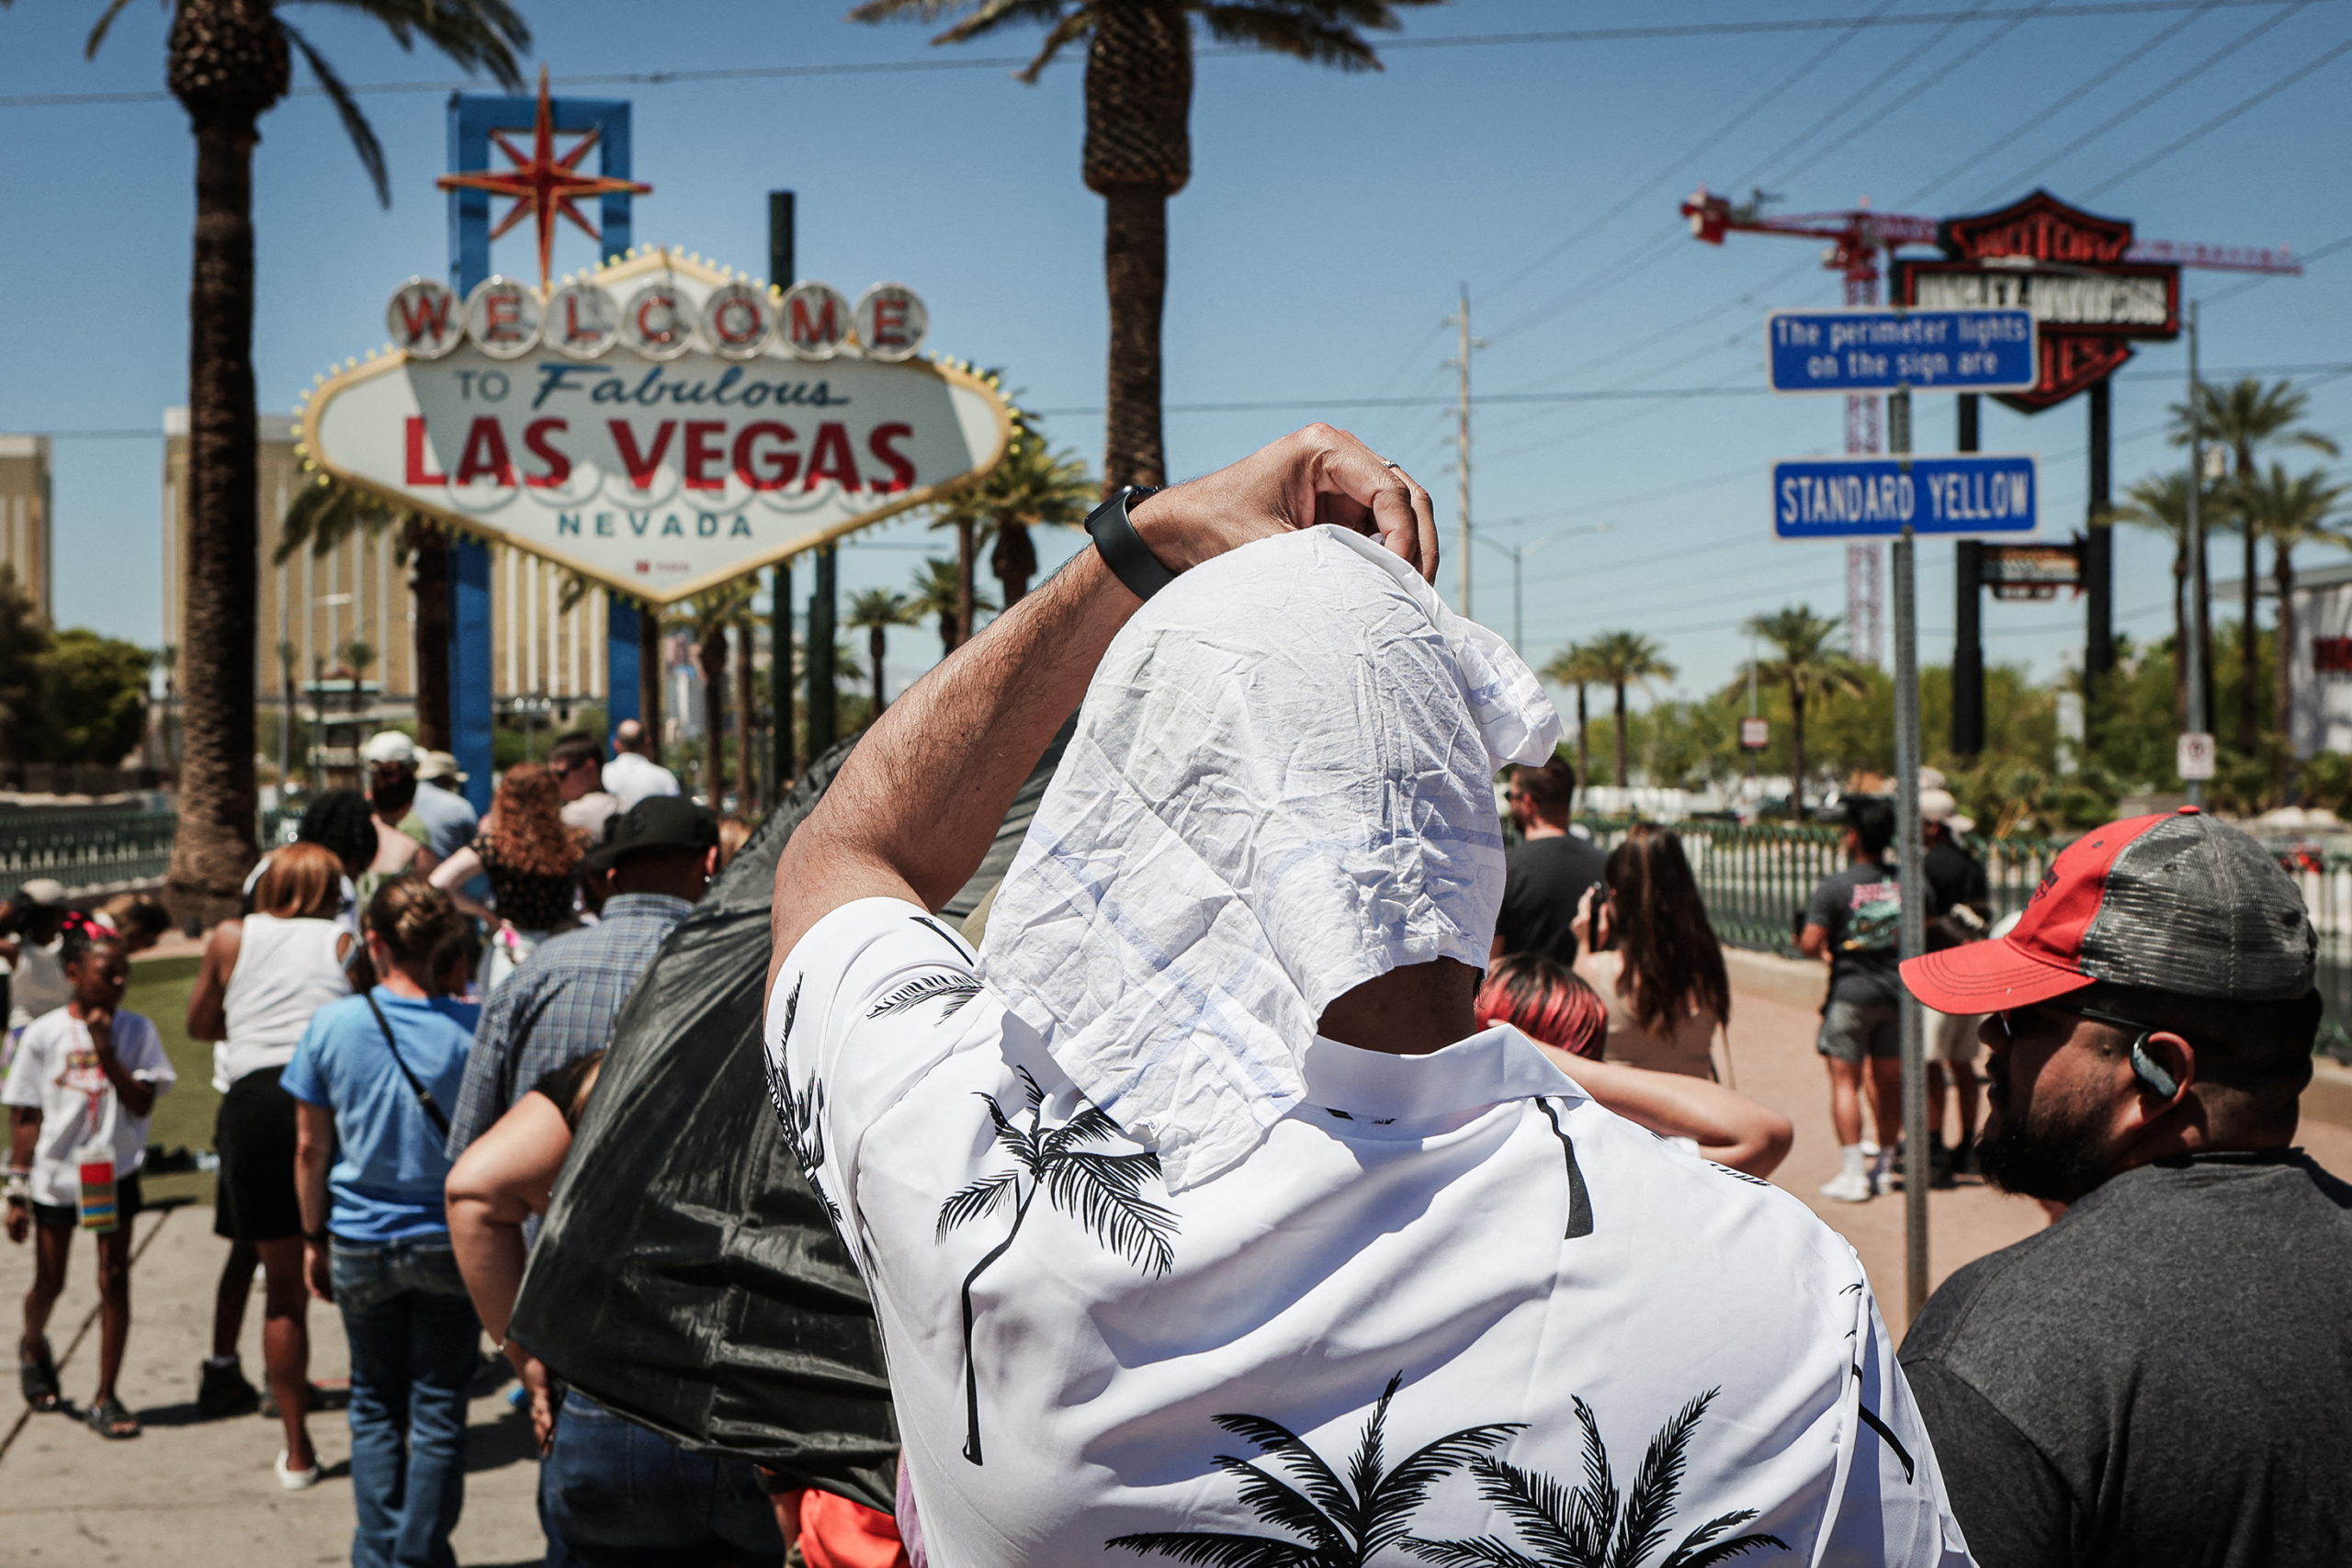 (Trên) Một người đàn ông đi ngang qua vòi phun nước trong một ngày nắng nóng ở Tokyo, vào ngày 29/07/2022. (Dưới) Một người đàn ông che nắng khi xếp hàng chờ chụp ảnh tại biển hiệu có dòng chữ Chào mừng đến Las Vegas, một biển hiệu mang tính lịch sử, trong một đợt nắng nóng ở Las Vegas, vào ngày 14/07/2023. (Ảnh: Philip Fong/AFP qua Getty Images, Ronda Churchill/AFP qua Getty Images)